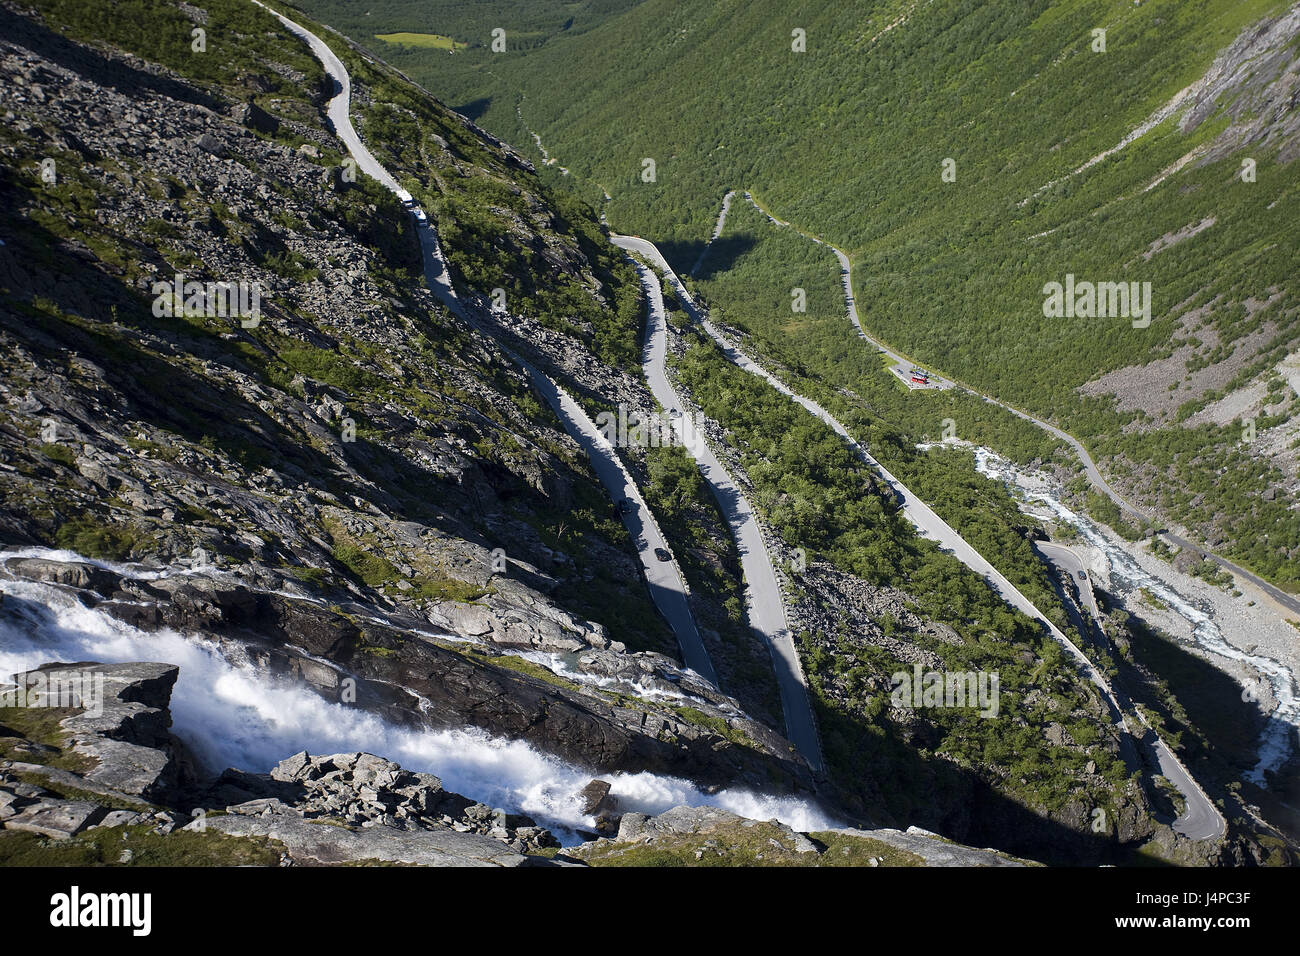 Norvegia, More og Romsdal, Trollstigen, valley, visualizzazione Foto Stock